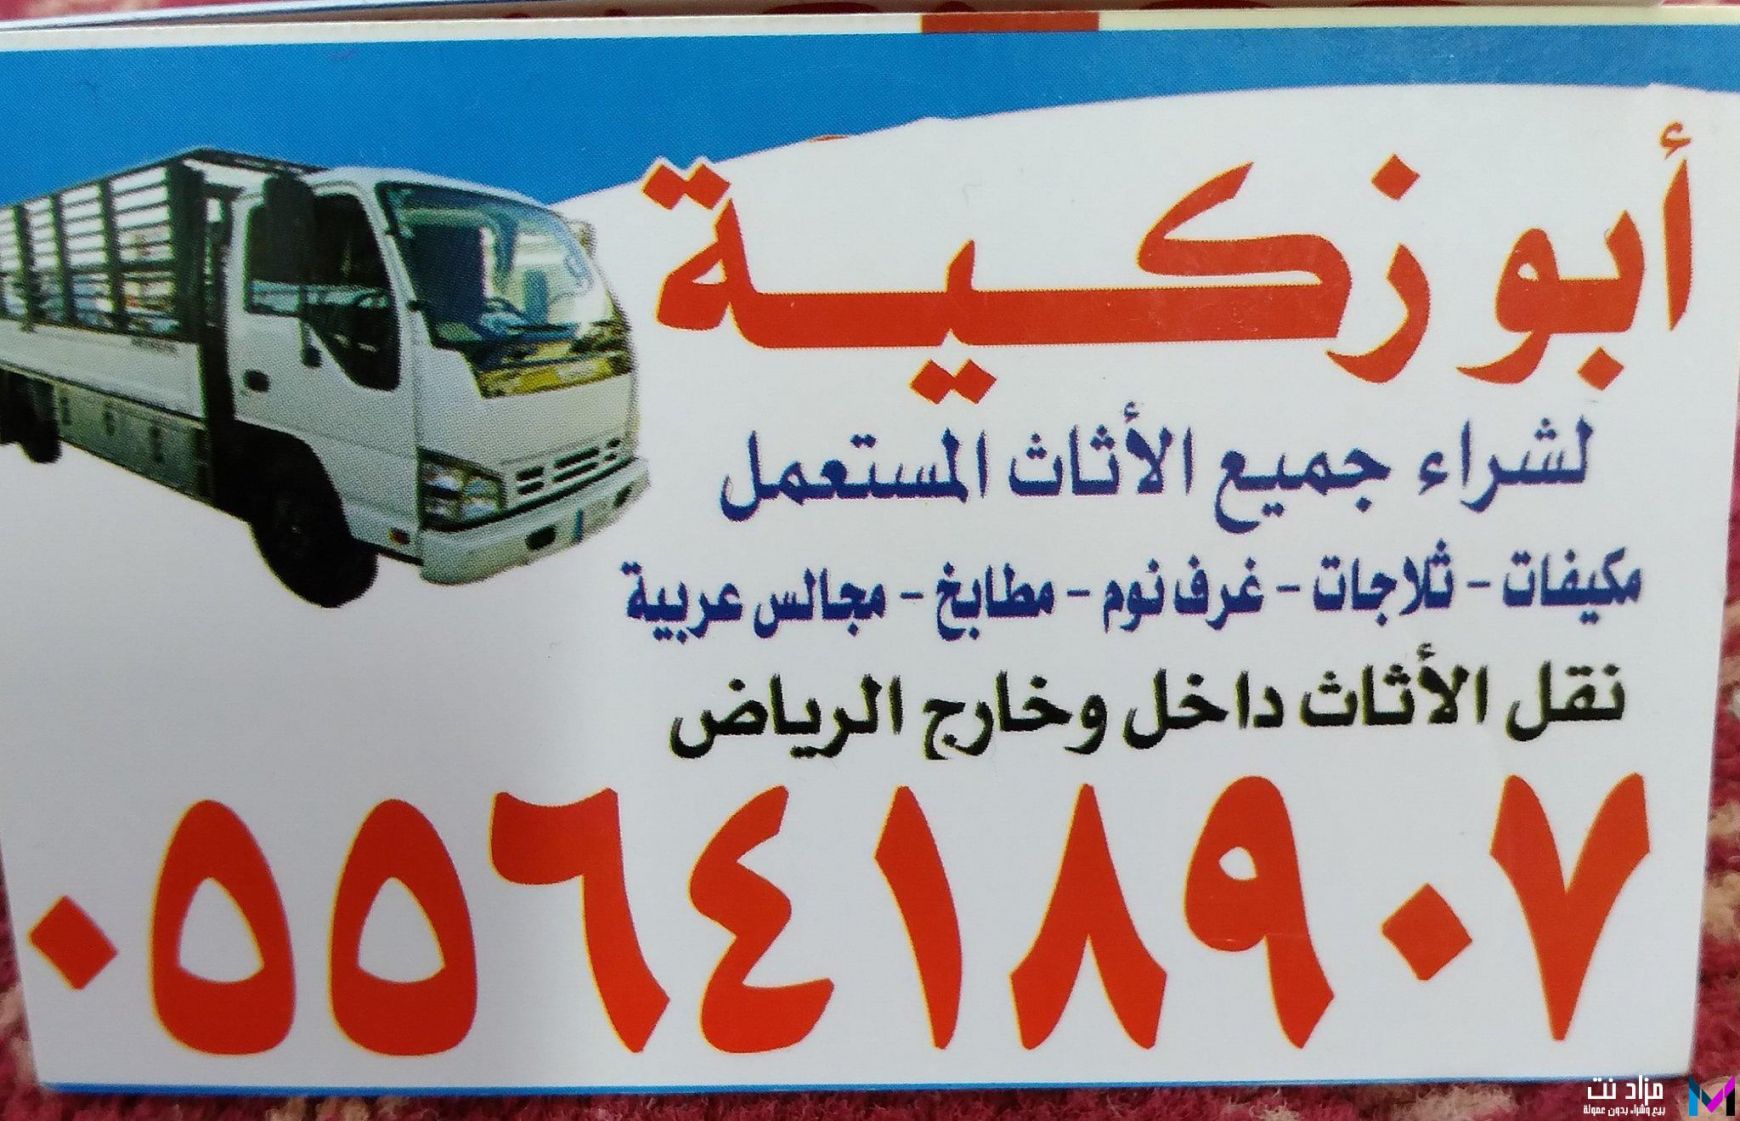 دينا نقل عفش داخل الرياض 0533192437